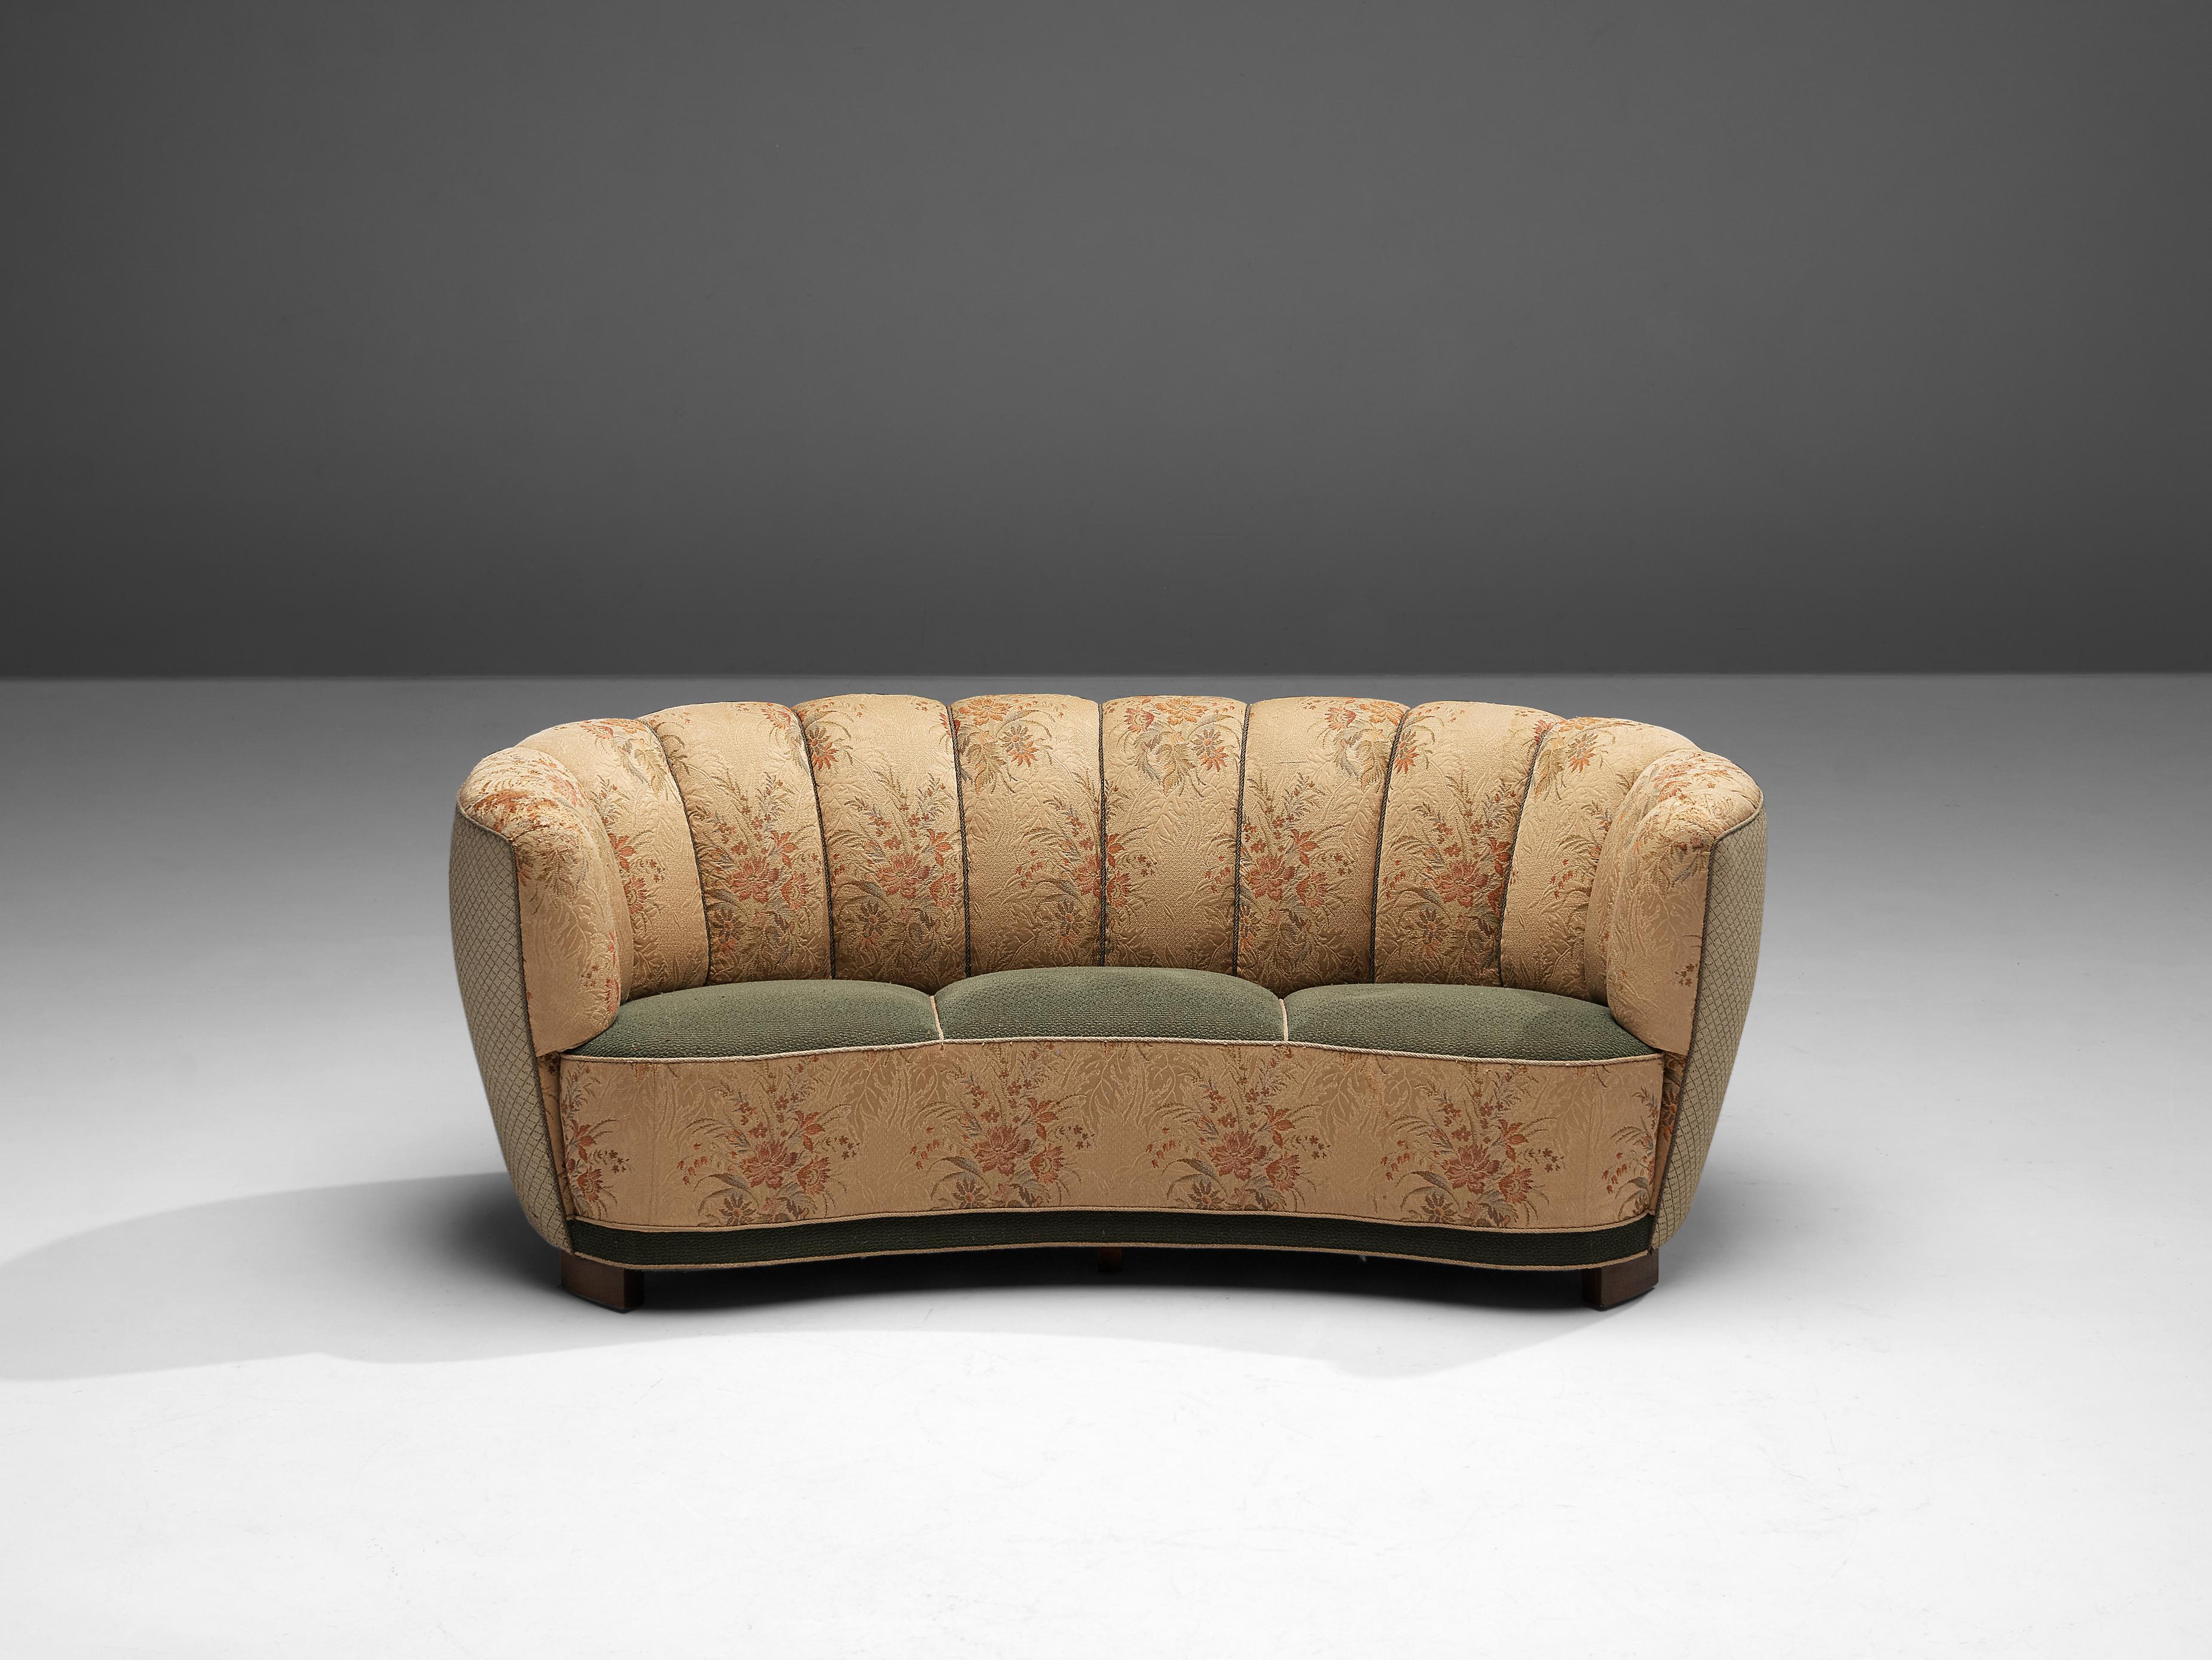 Sofá Banana, tapicería floral, madera, Dinamarca, años 40.

Este voluptuoso sofá está realizado en un tejido floral con patas de madera. El sofá tiene un respaldo alto y curvado. El respaldo es curvo y desemboca en los voluminosos reposabrazos